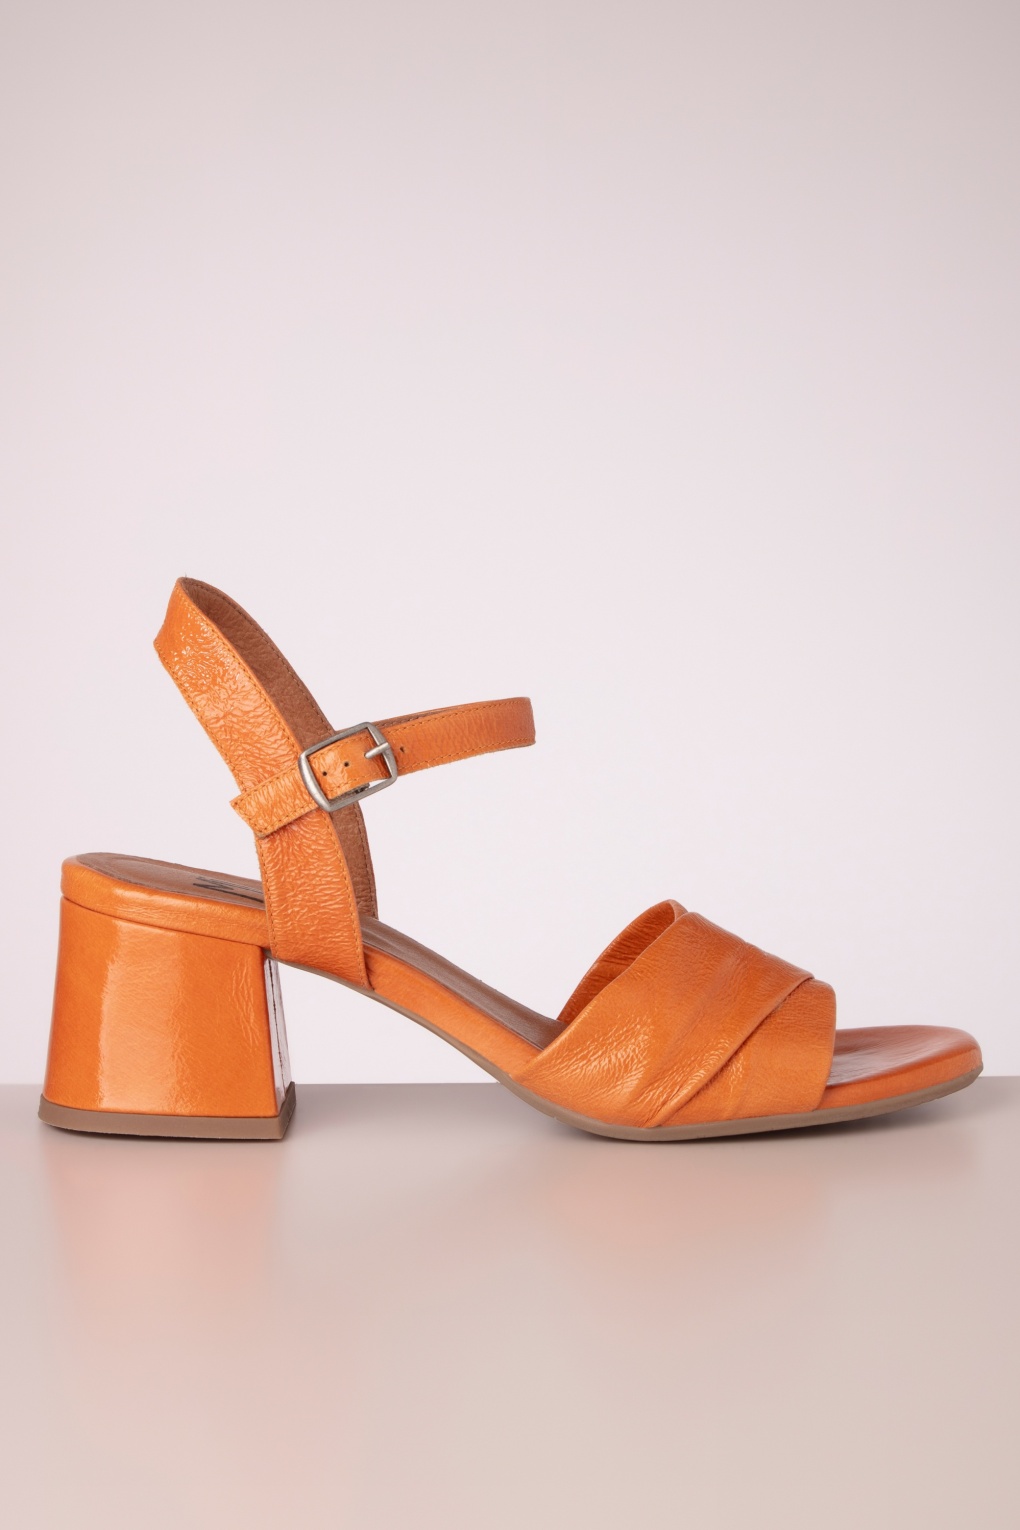 Bela Sandal in Patent Orange